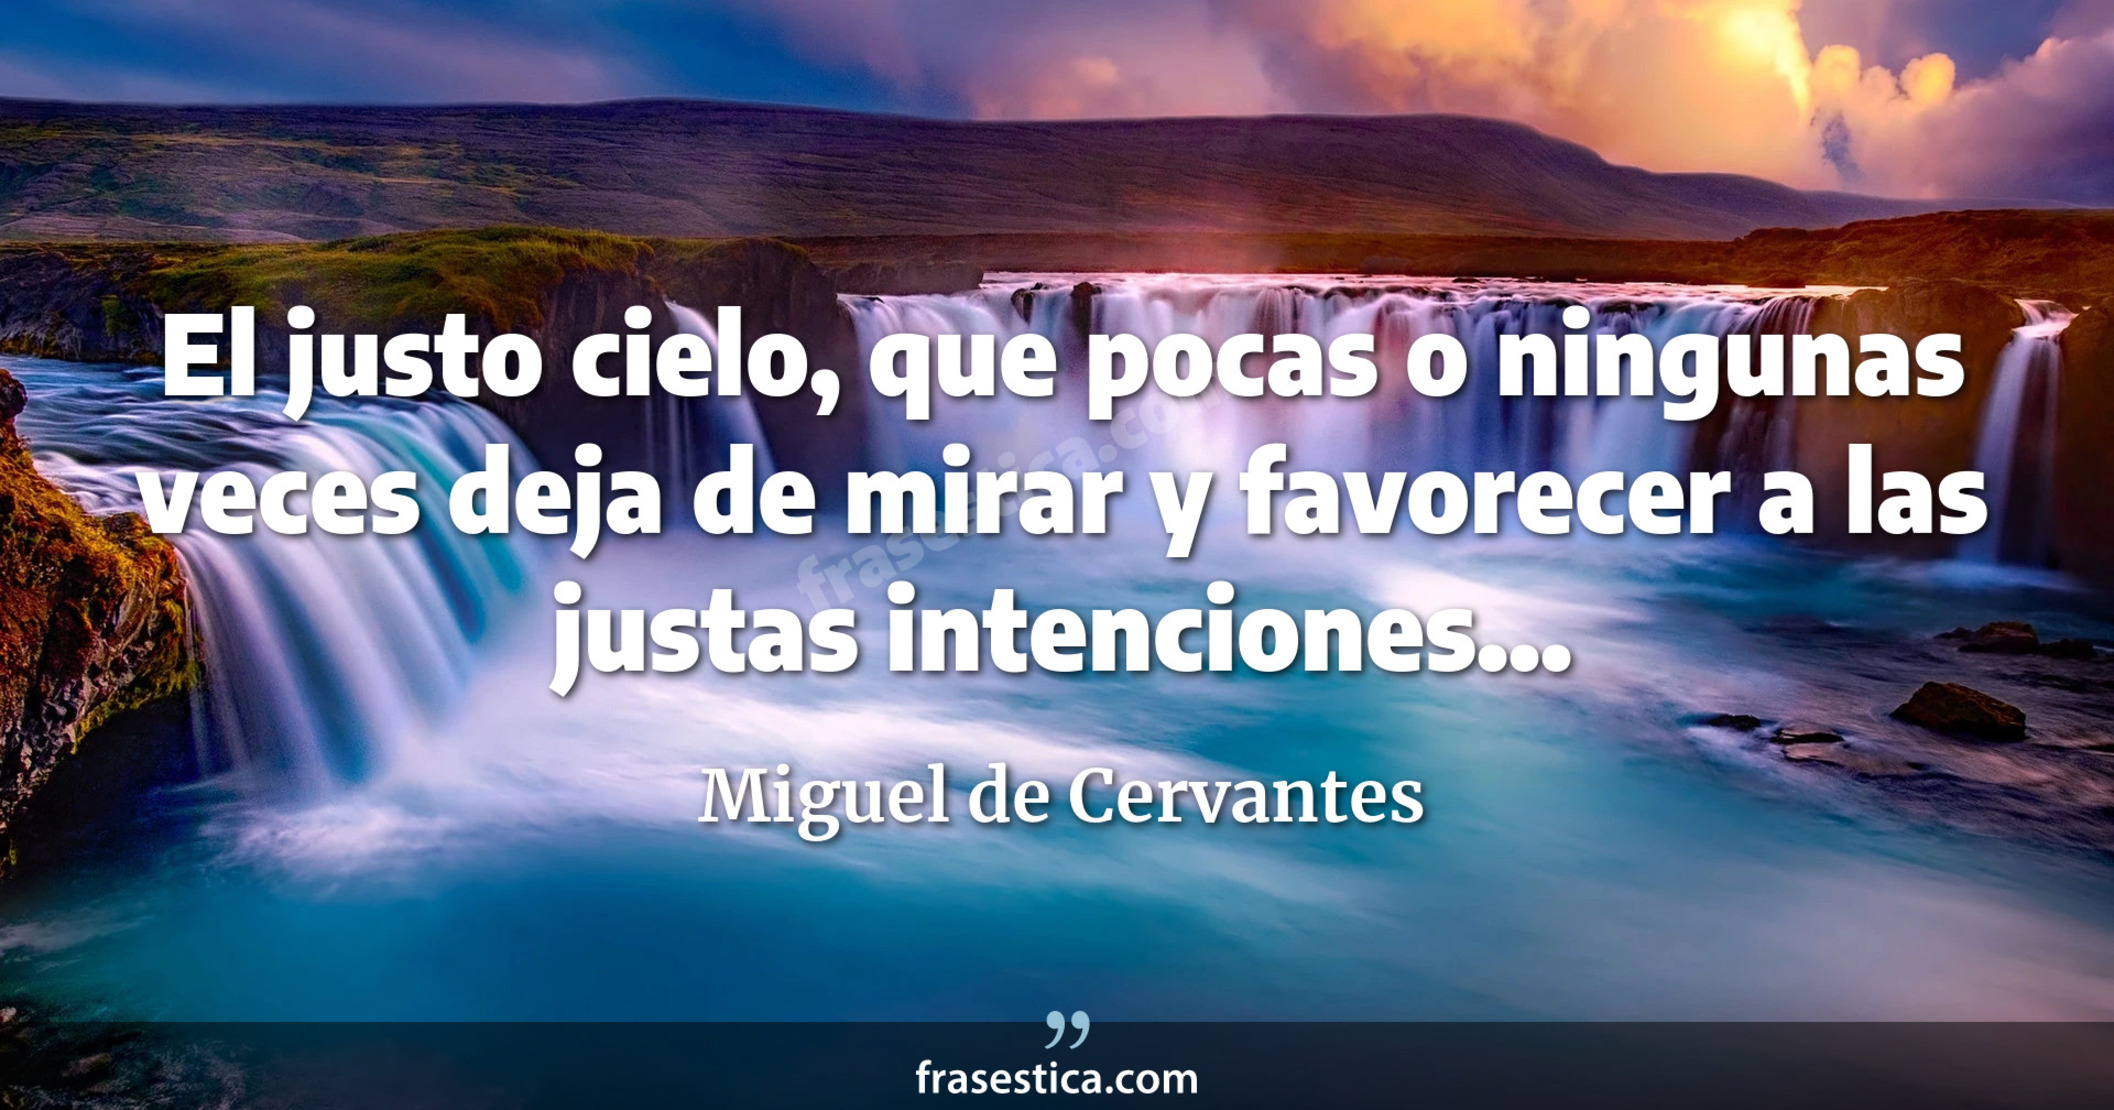 El justo cielo, que pocas o ningunas veces deja de mirar y favorecer a las justas intenciones... - Miguel de Cervantes